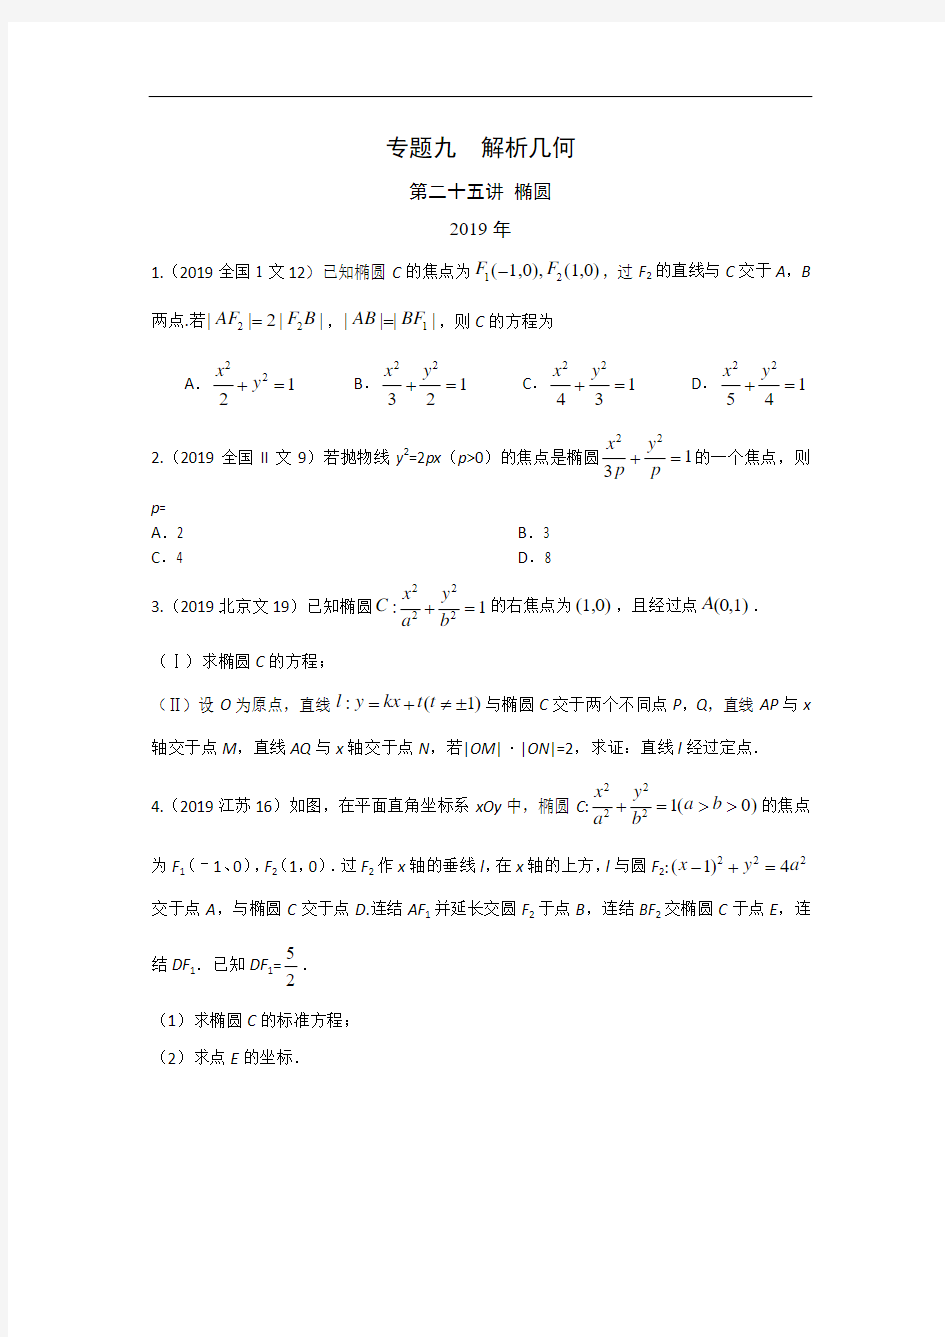 高考数学真题专题(文数) 椭圆